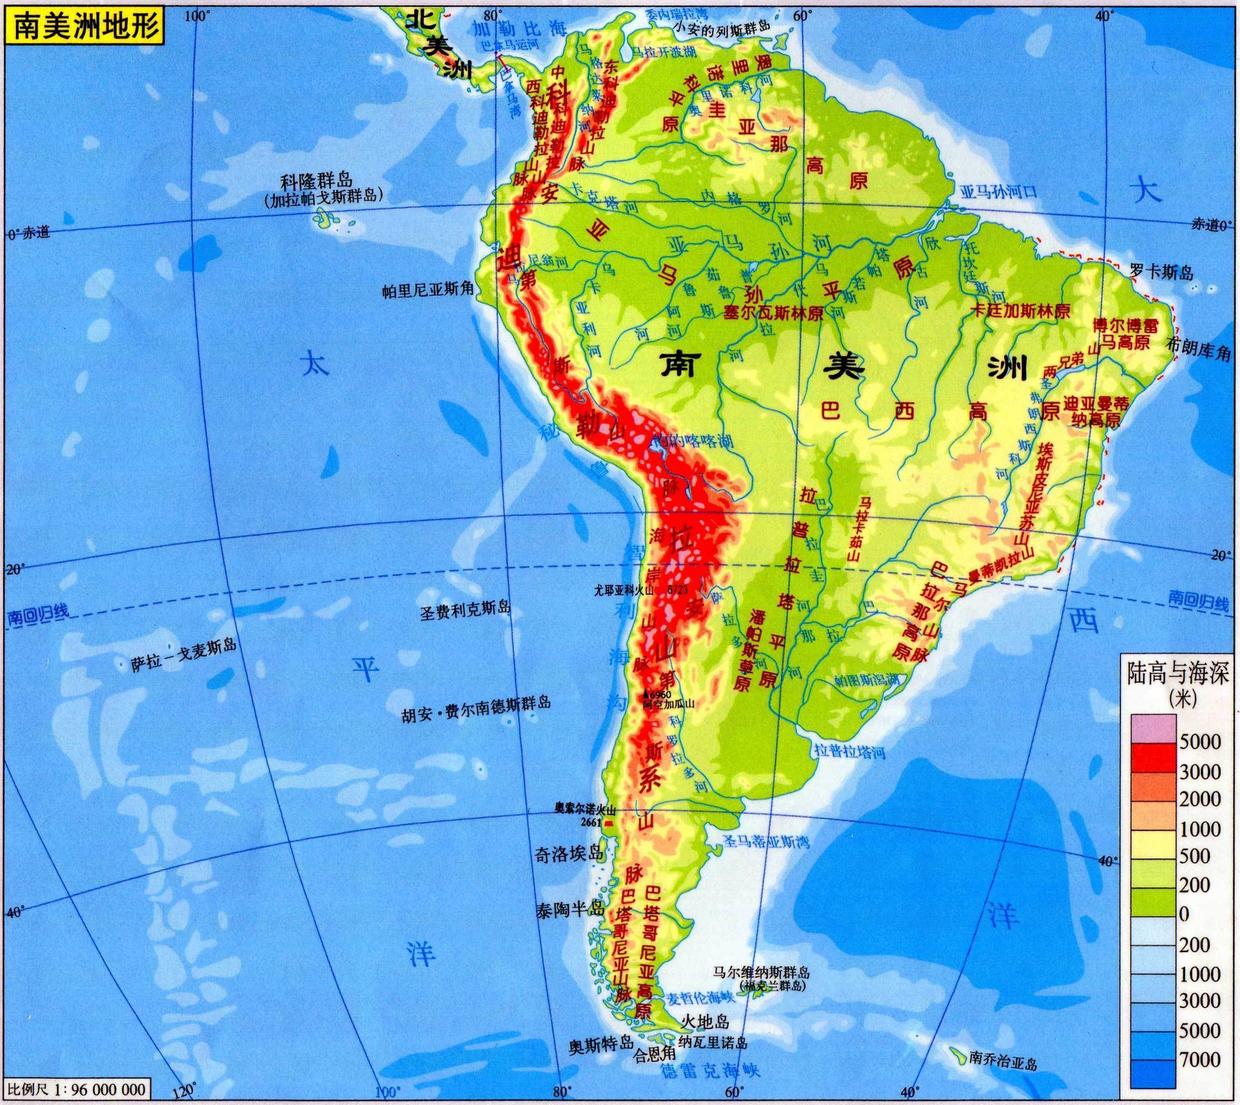 原创科迪勒拉山系是世界上最长的褶皱山系它是如何形成的